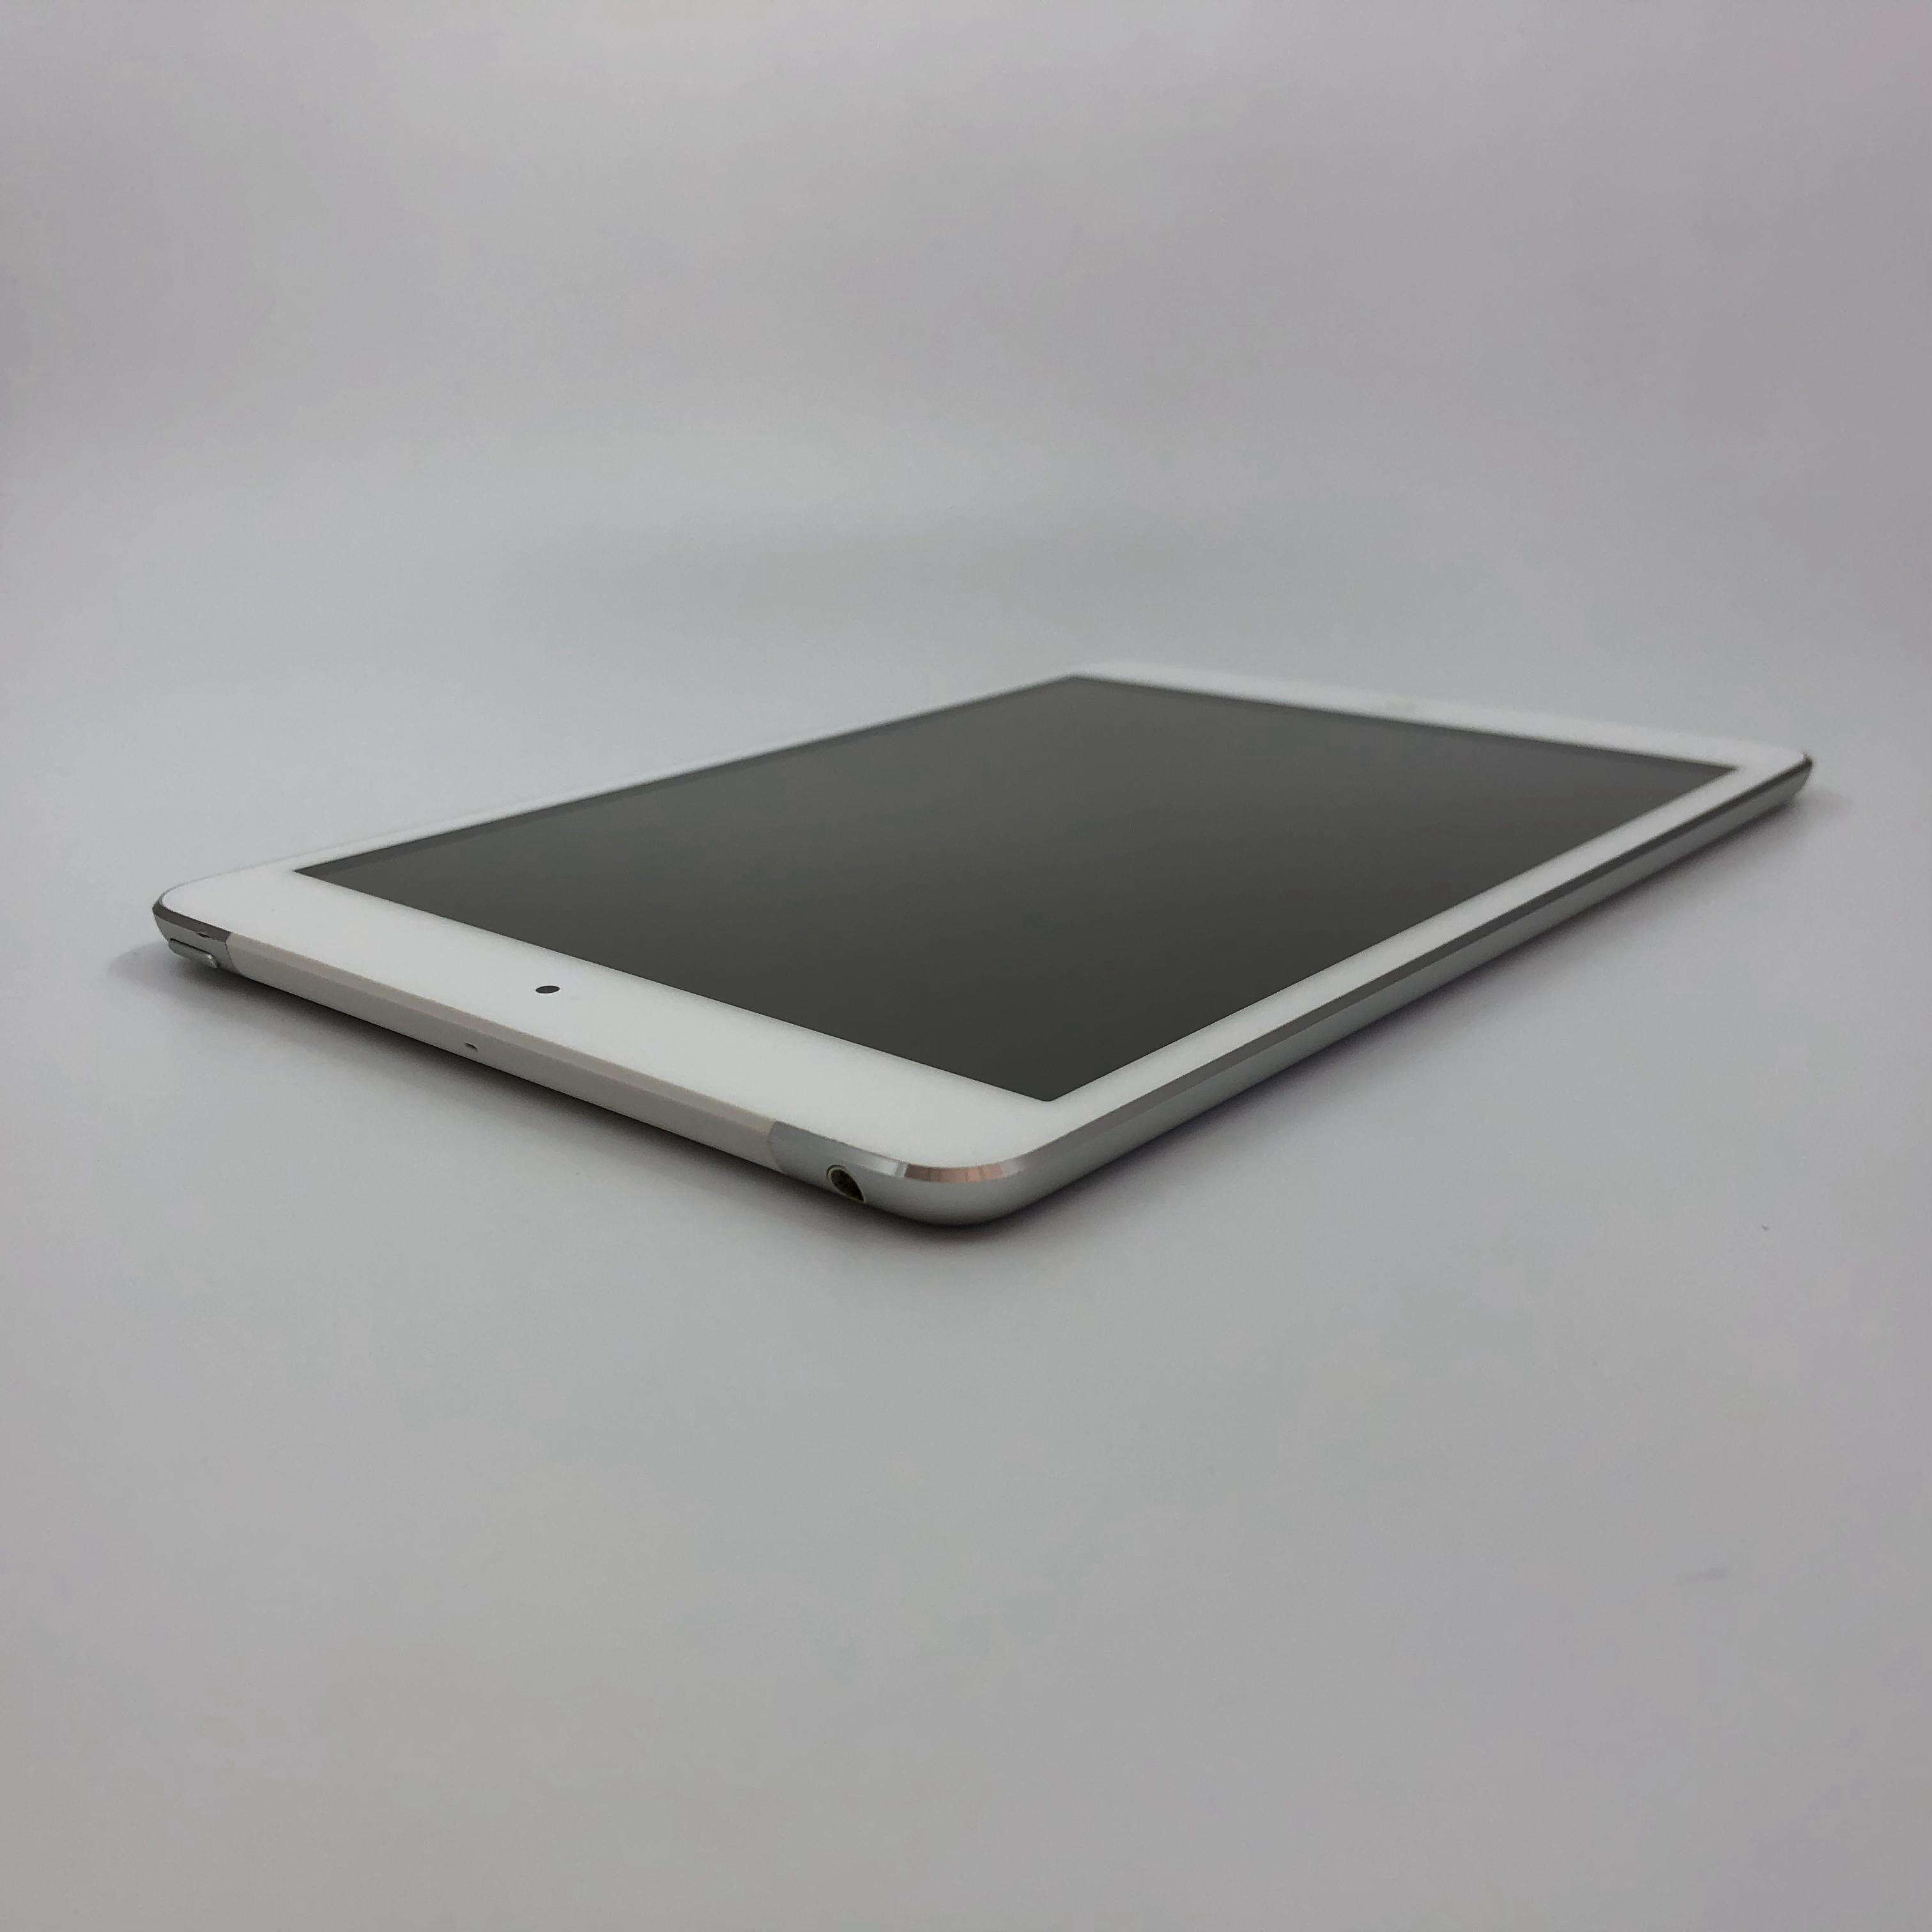 iPad mini 32G 国行Cellular版